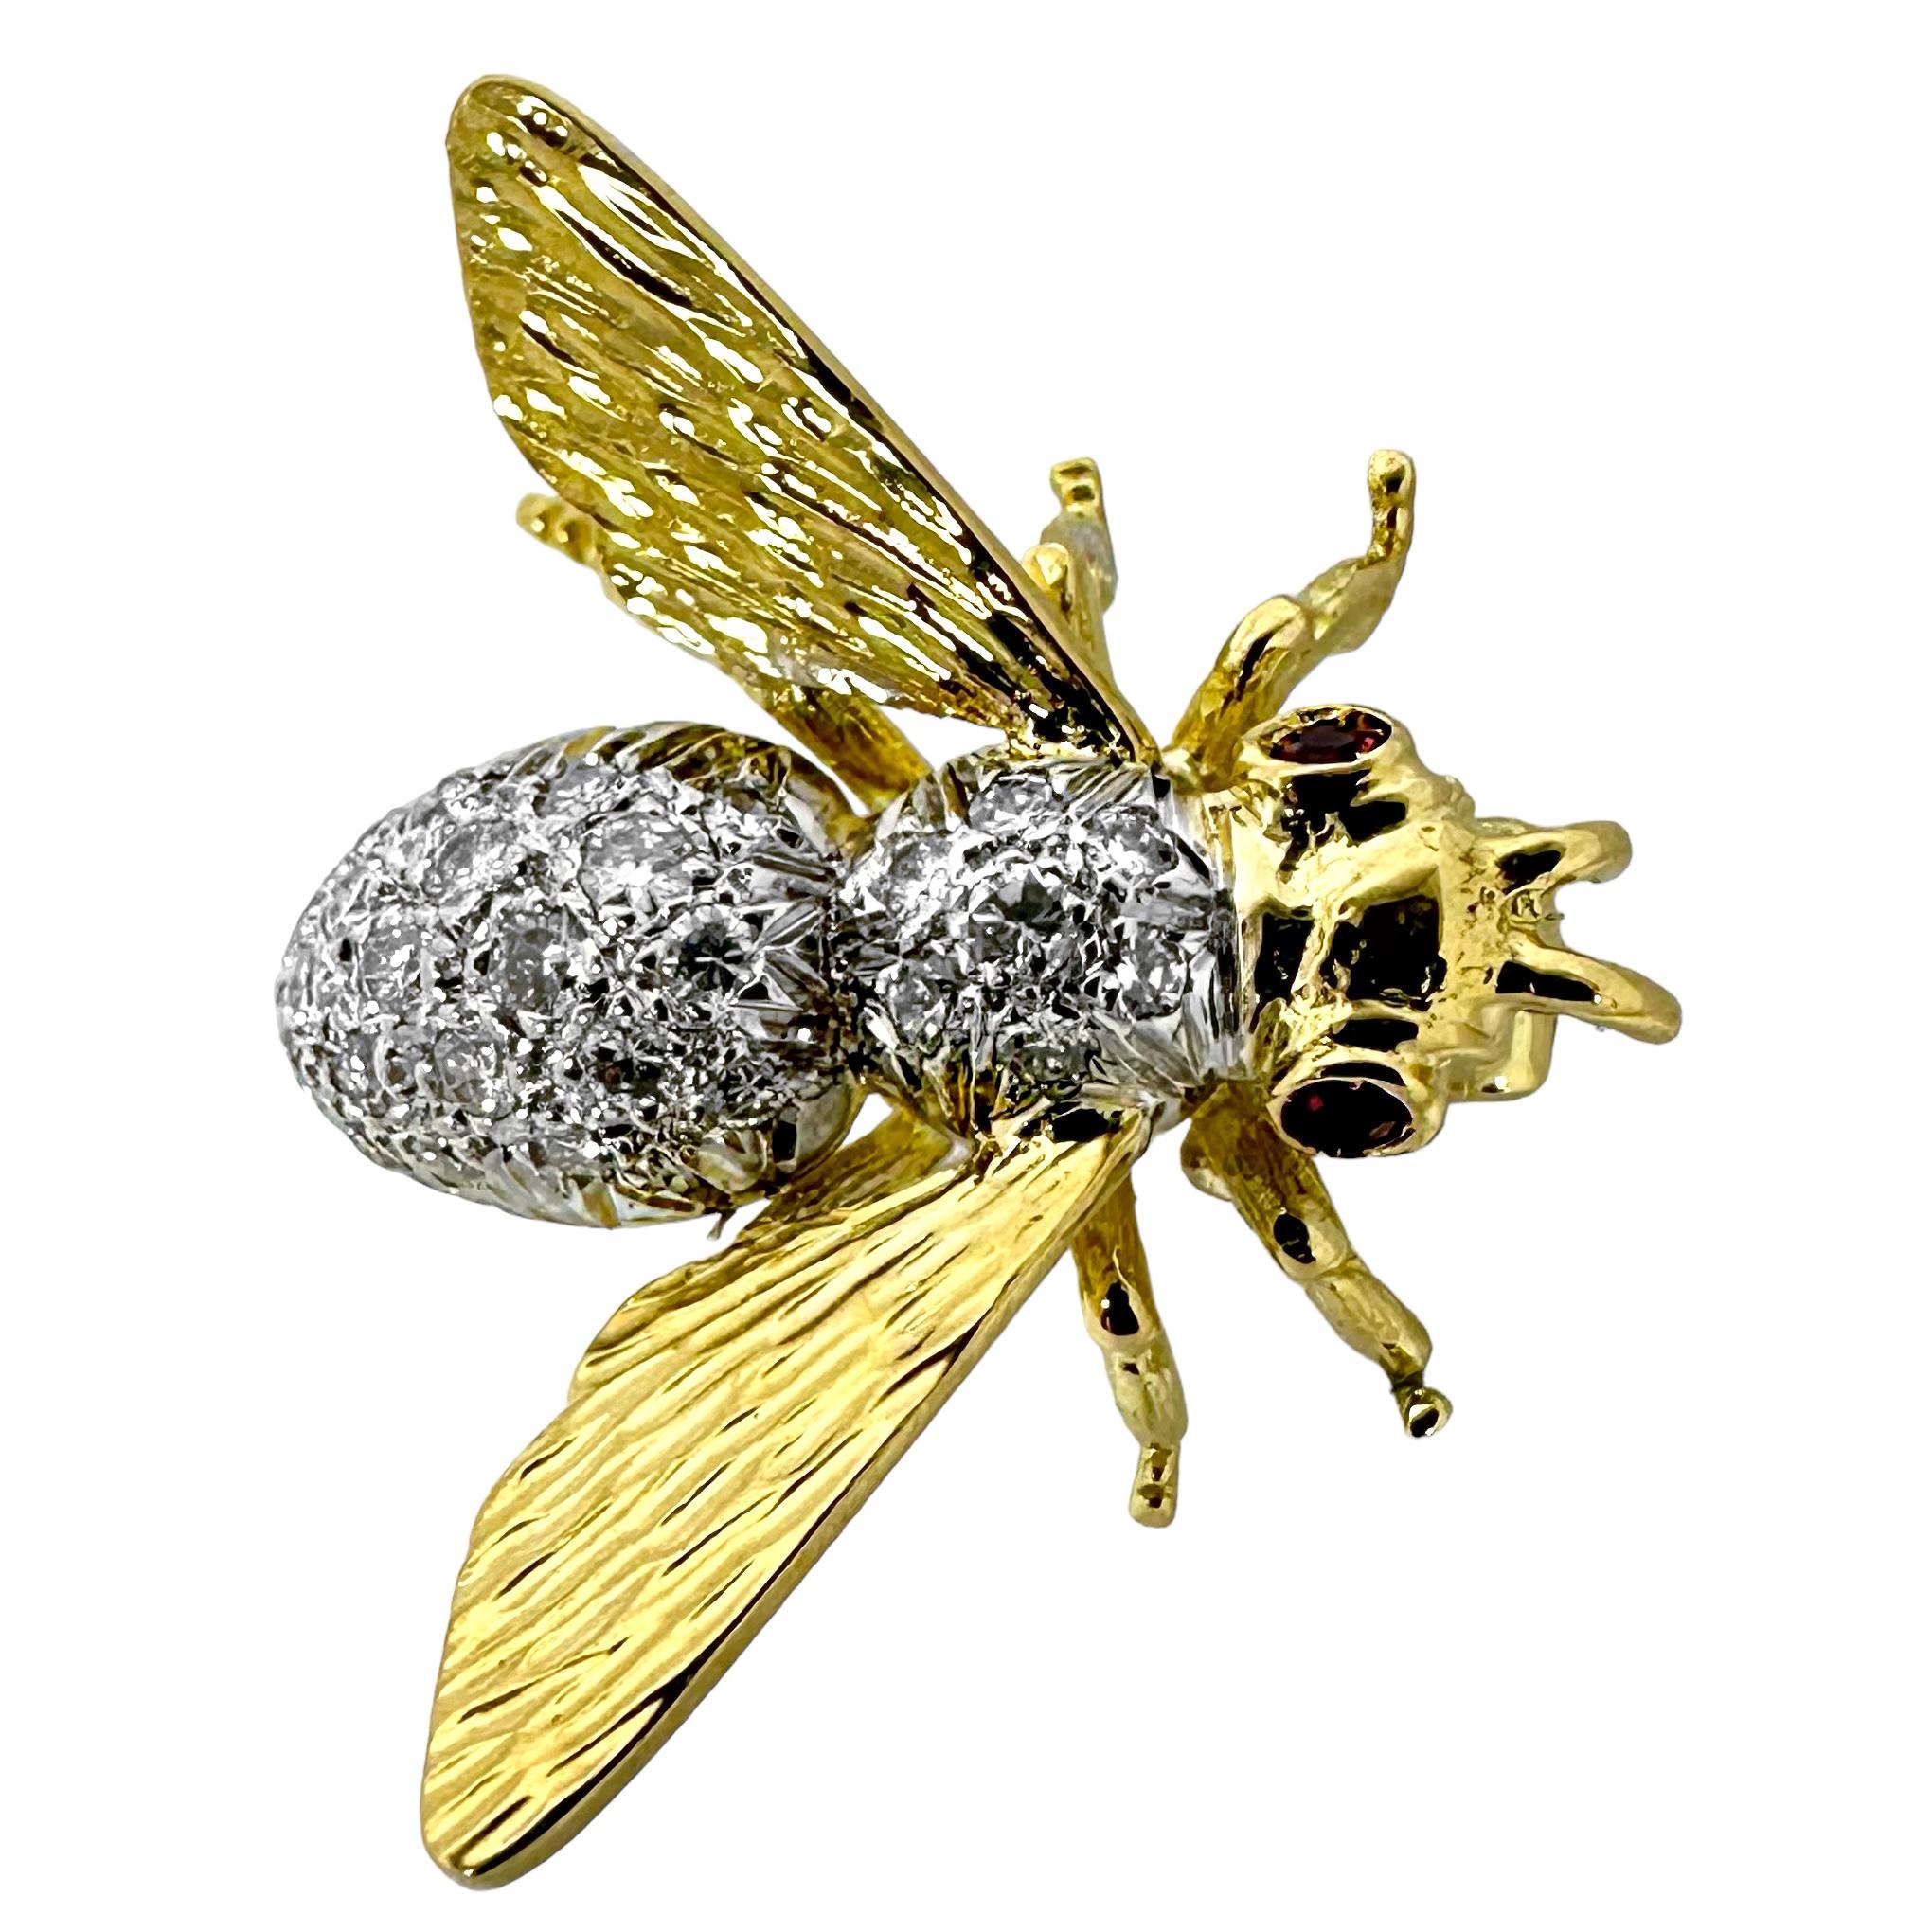 Diese phantasievolle italienische Kreation aus der Mitte des 20. Jahrhunderts zeigt eine schön proportionierte Honigbiene mit ausgebreiteten Flügeln, bereit zum Flug. Der Brustkorb und der Bauch sind mit Diamanten besetzt, und die Augen sind